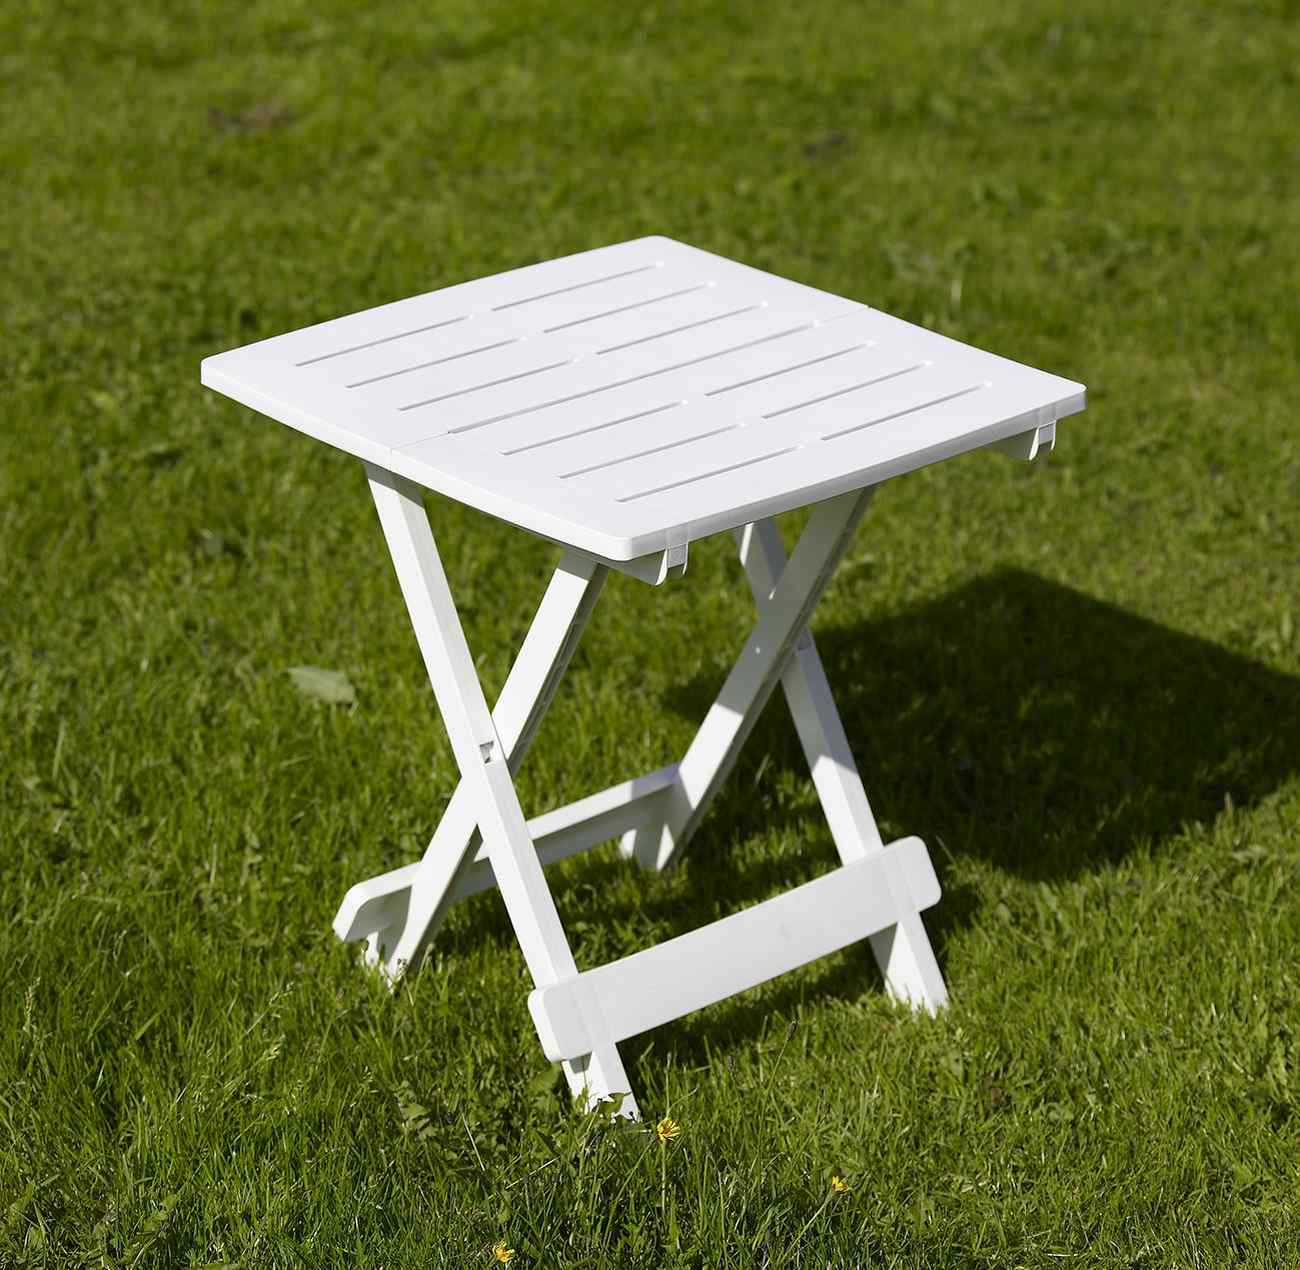 Der Gartenbeistelltisch Adige überzeugt mit seinem modernen Design. Gefertigt wurde er aus Kunststoff, welcher einen Weißen Farbton besitzt. Das Gestell ist auch aus Kunststoff und hat eine weiße Farbe. Der Tisch besitzt eine Länge von 45 cm.